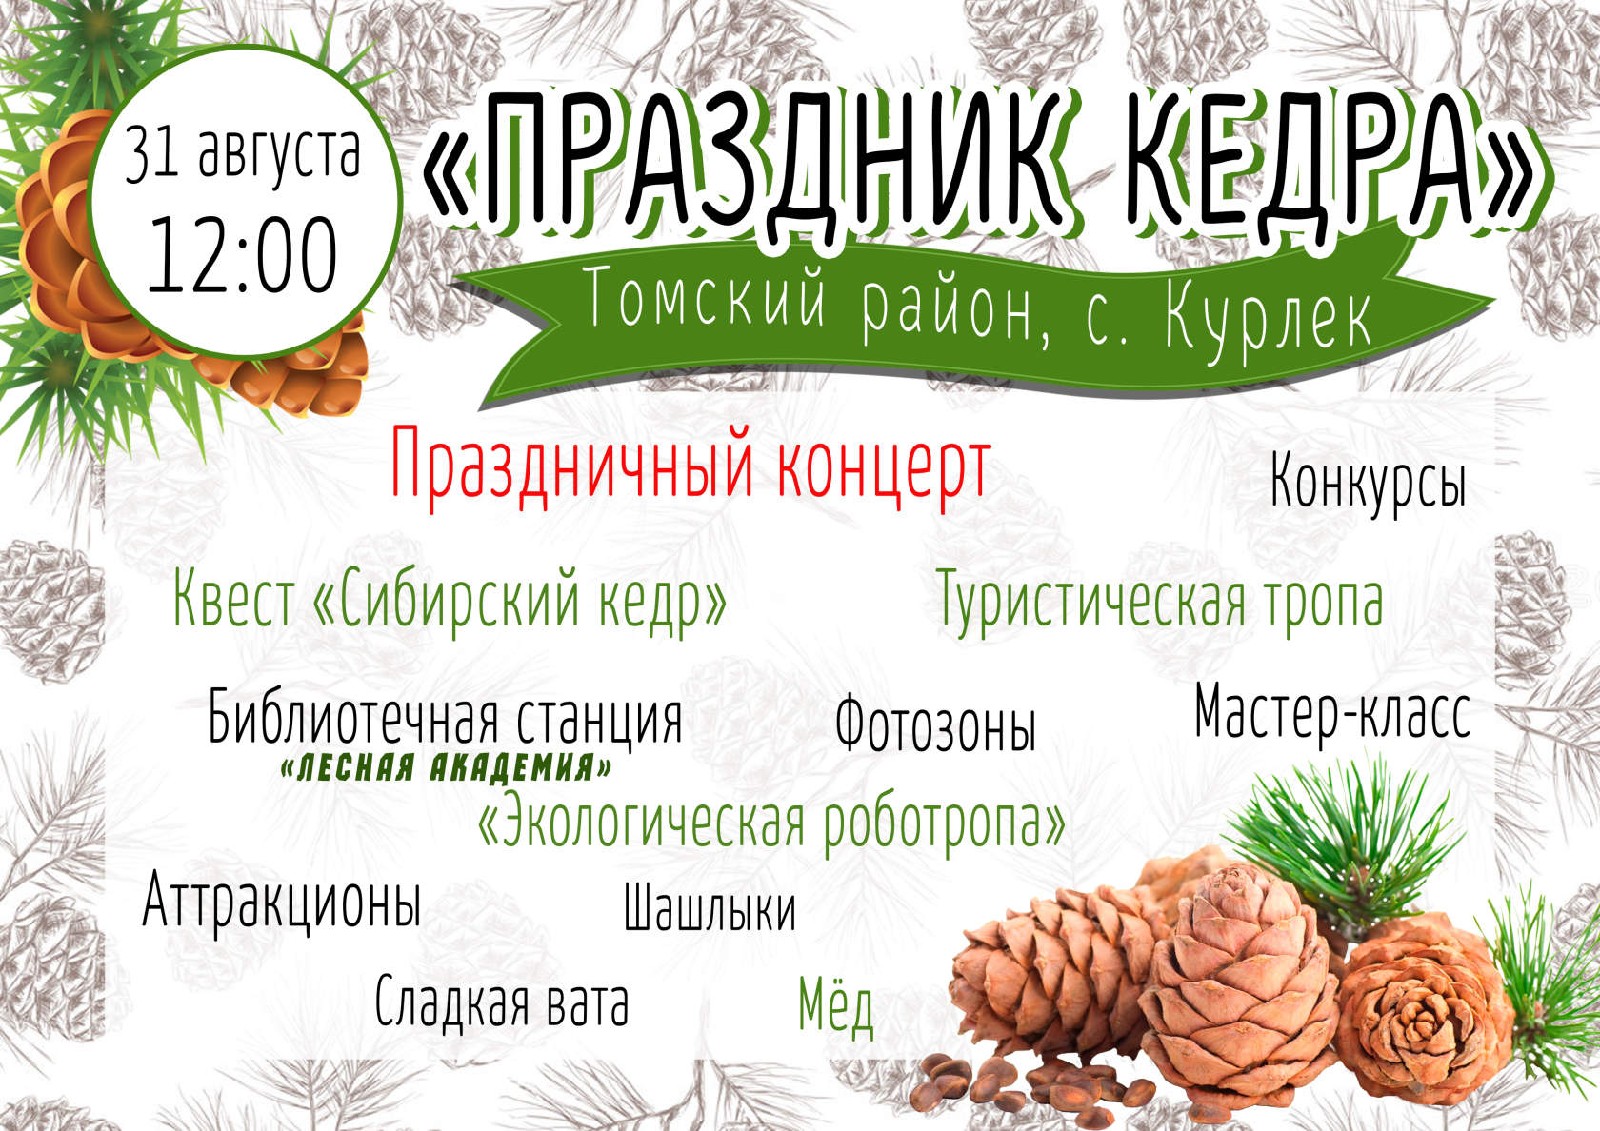 31 августа в селе Курлек Томского района пройдет III районный фестиваль «Праздник кедра».